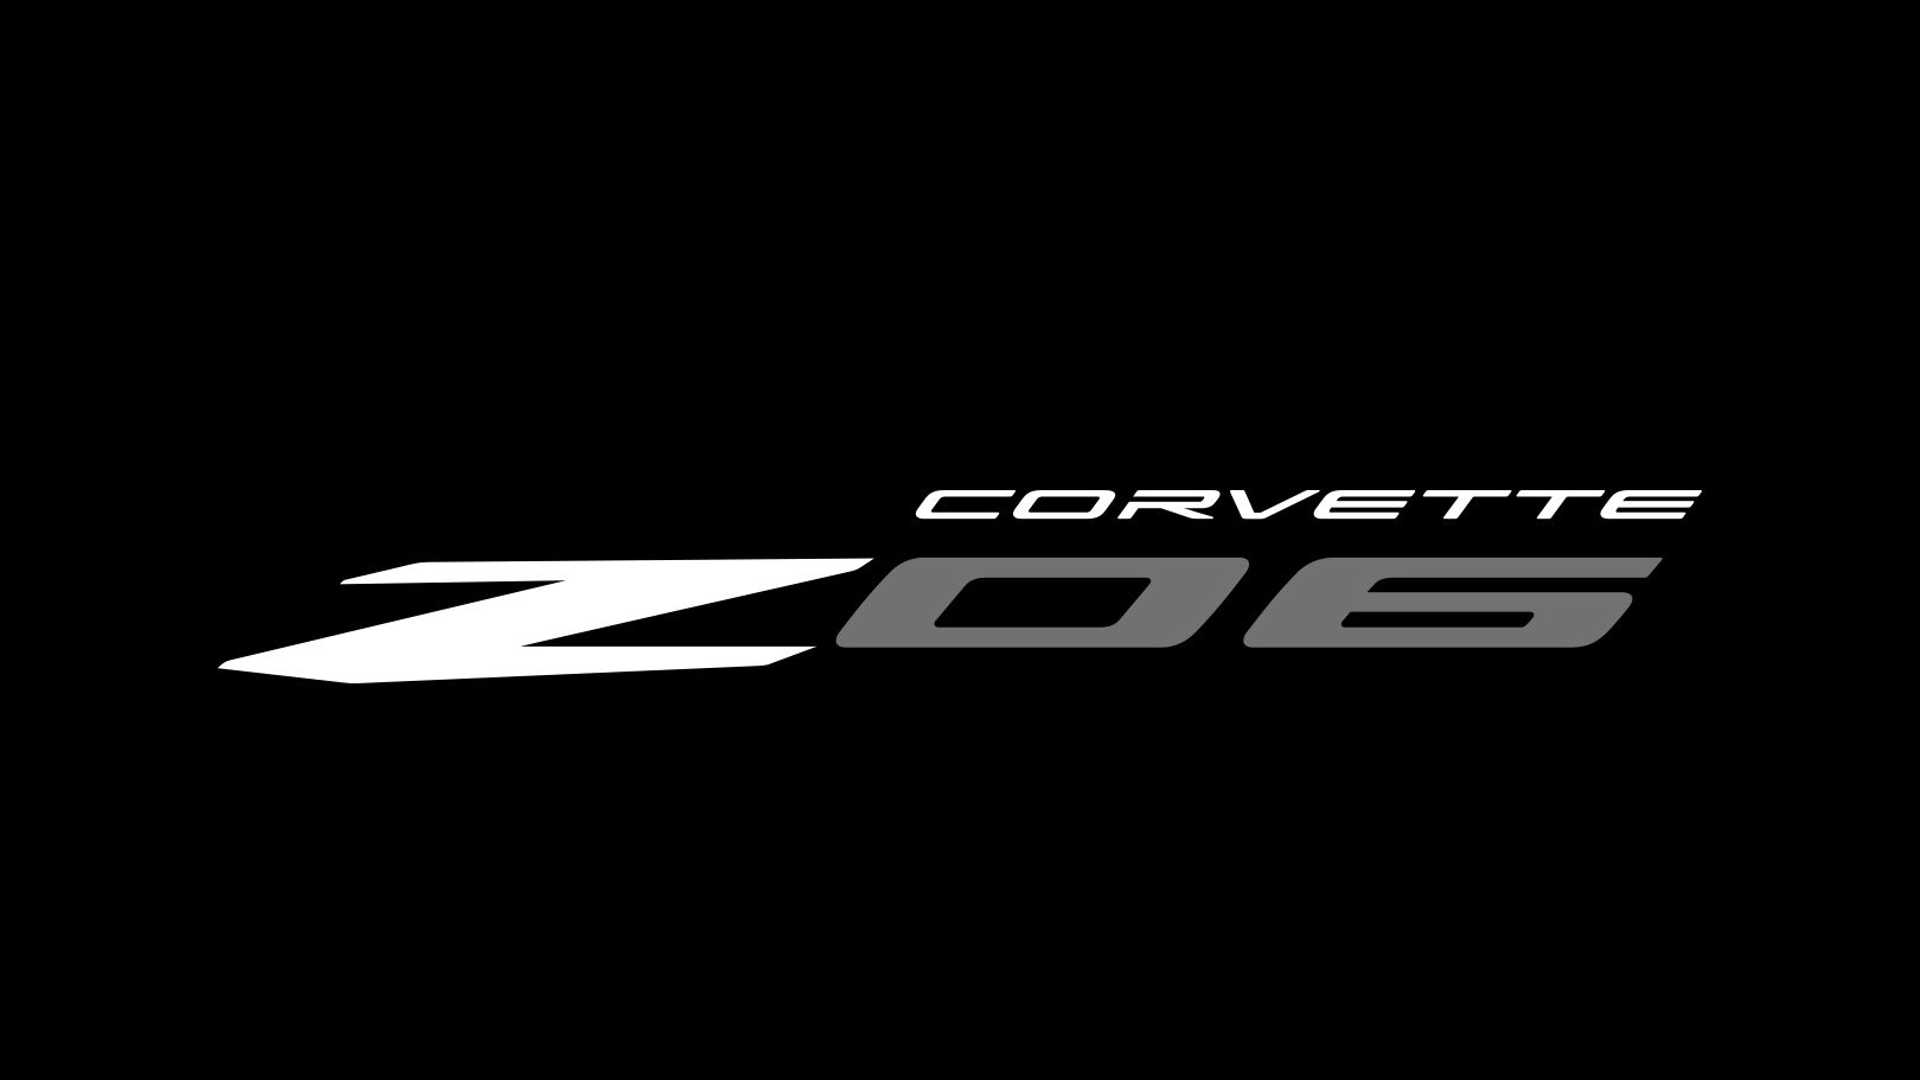 Tak będzie wyglądała Corvette Z06 - oficjalne zdjęcia przed premierą